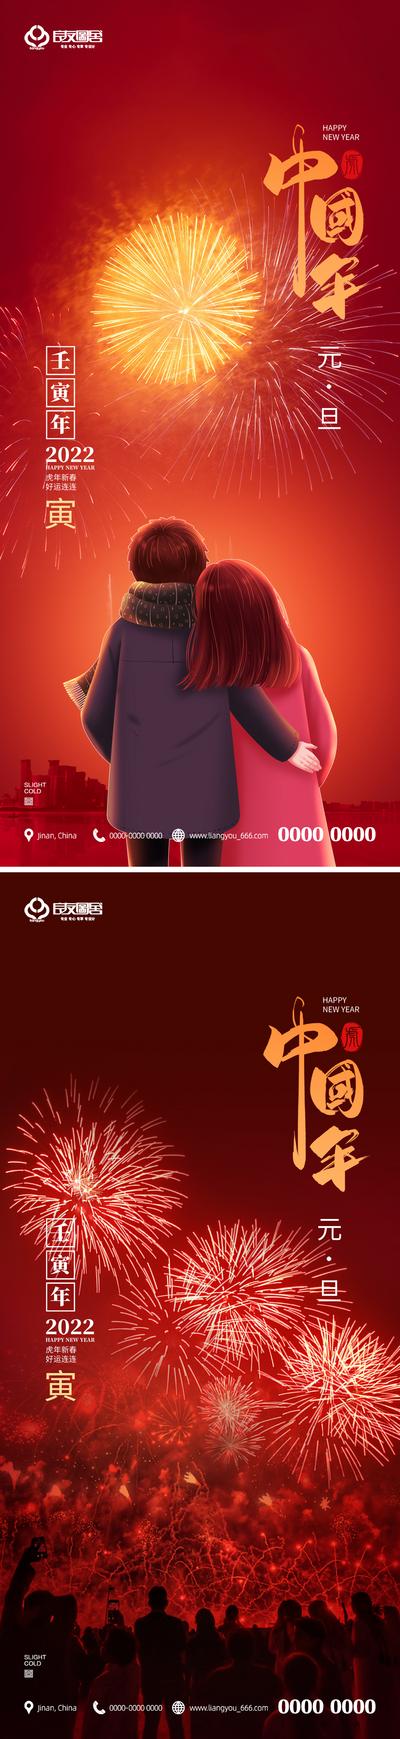 南门网 海报 房地产 中国传统节日 元旦 2022 红金 插画 系列